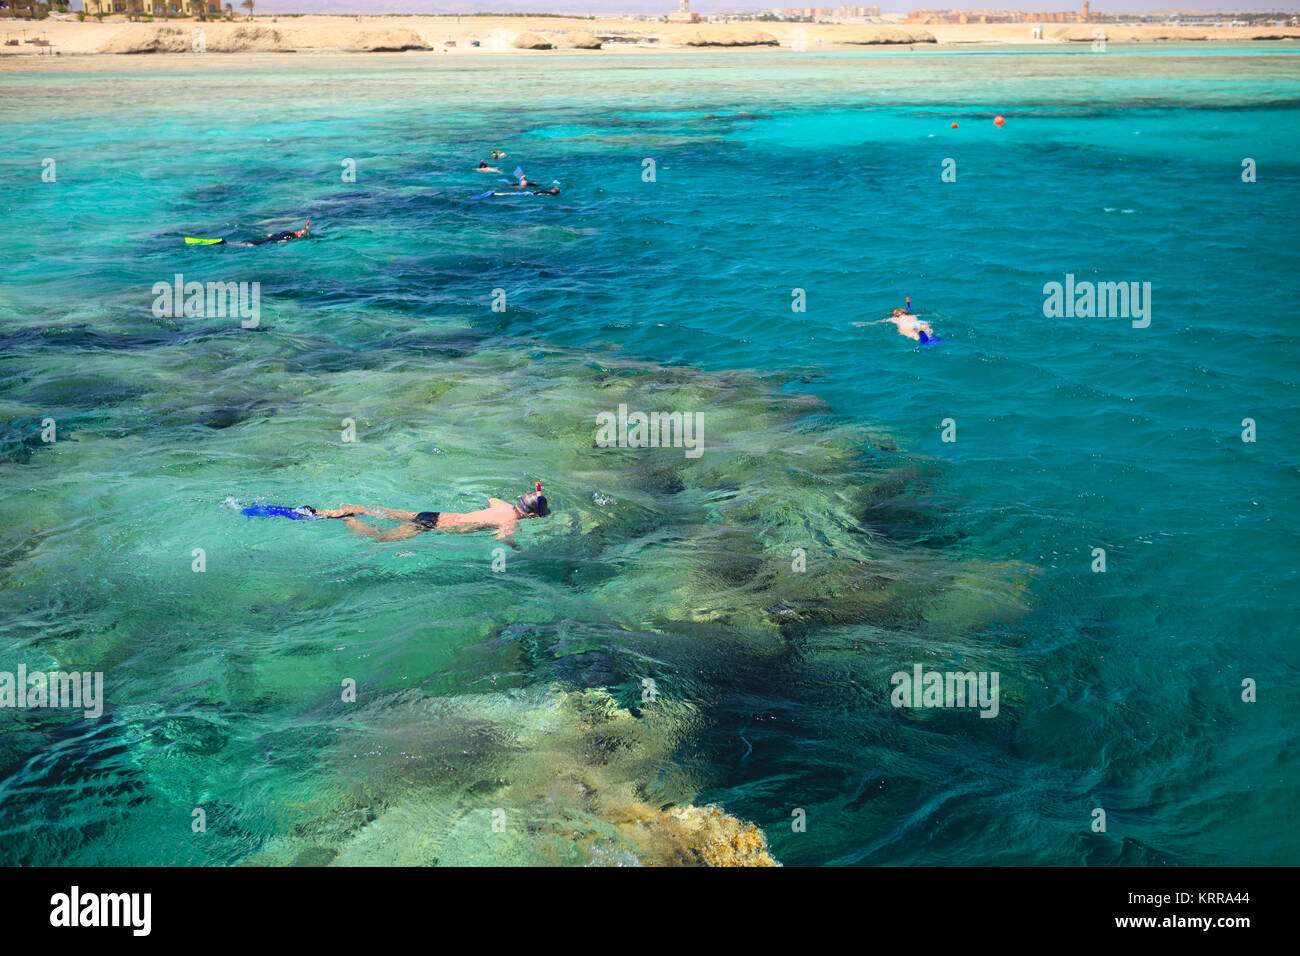 La gente lo snorkeling in una bellissima barriera corallina vicino a Port Ghalib. A Marsa Alam, Egitto Foto Stock